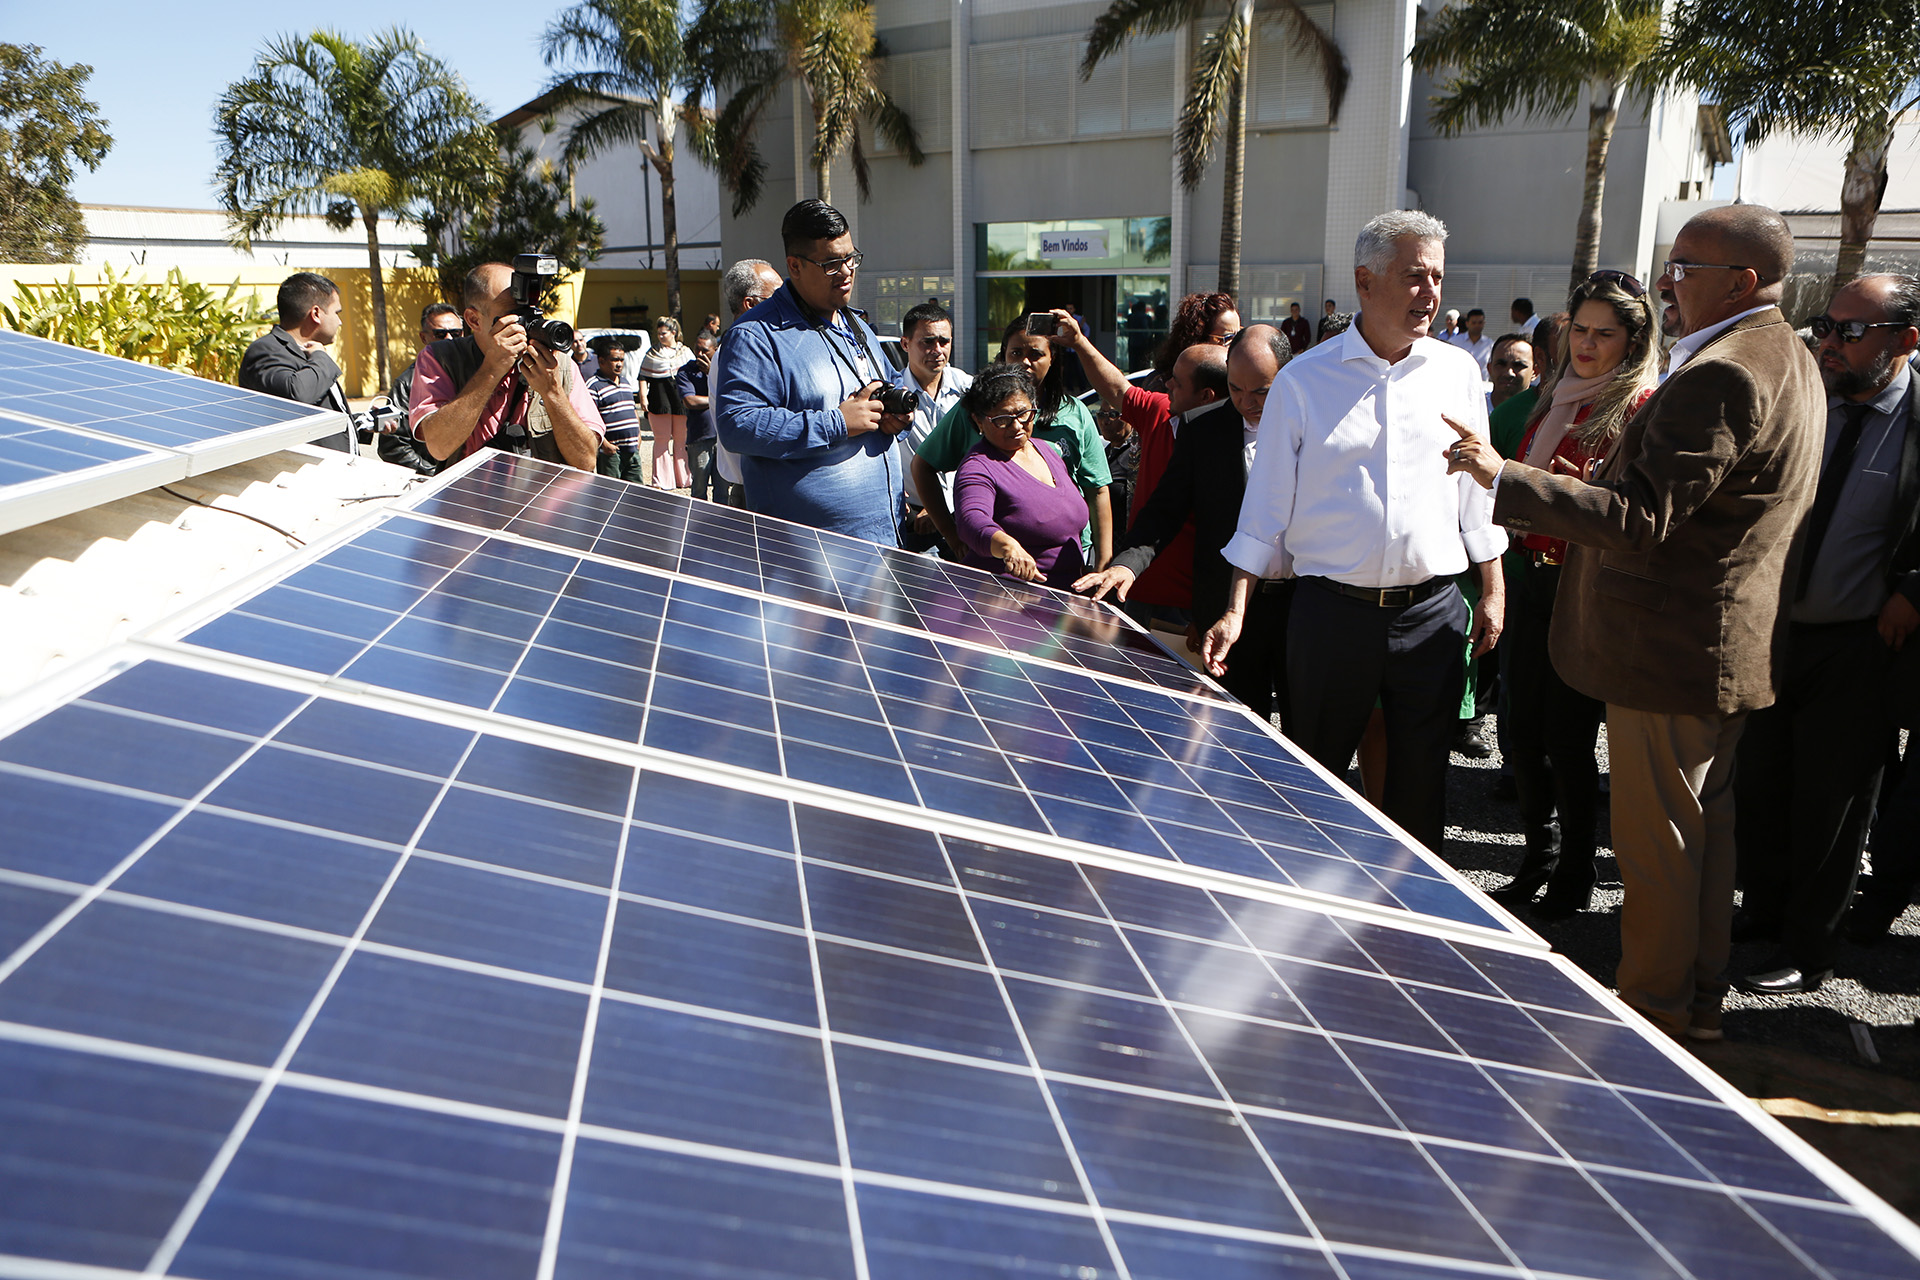 Governador de Brasília, Rodrigo Rollemberg, conheceu o sistema de captação de energia solar implementado por alunos do curso de instalação e manutenção de placas fotovoltaicas oferecido na instituição.